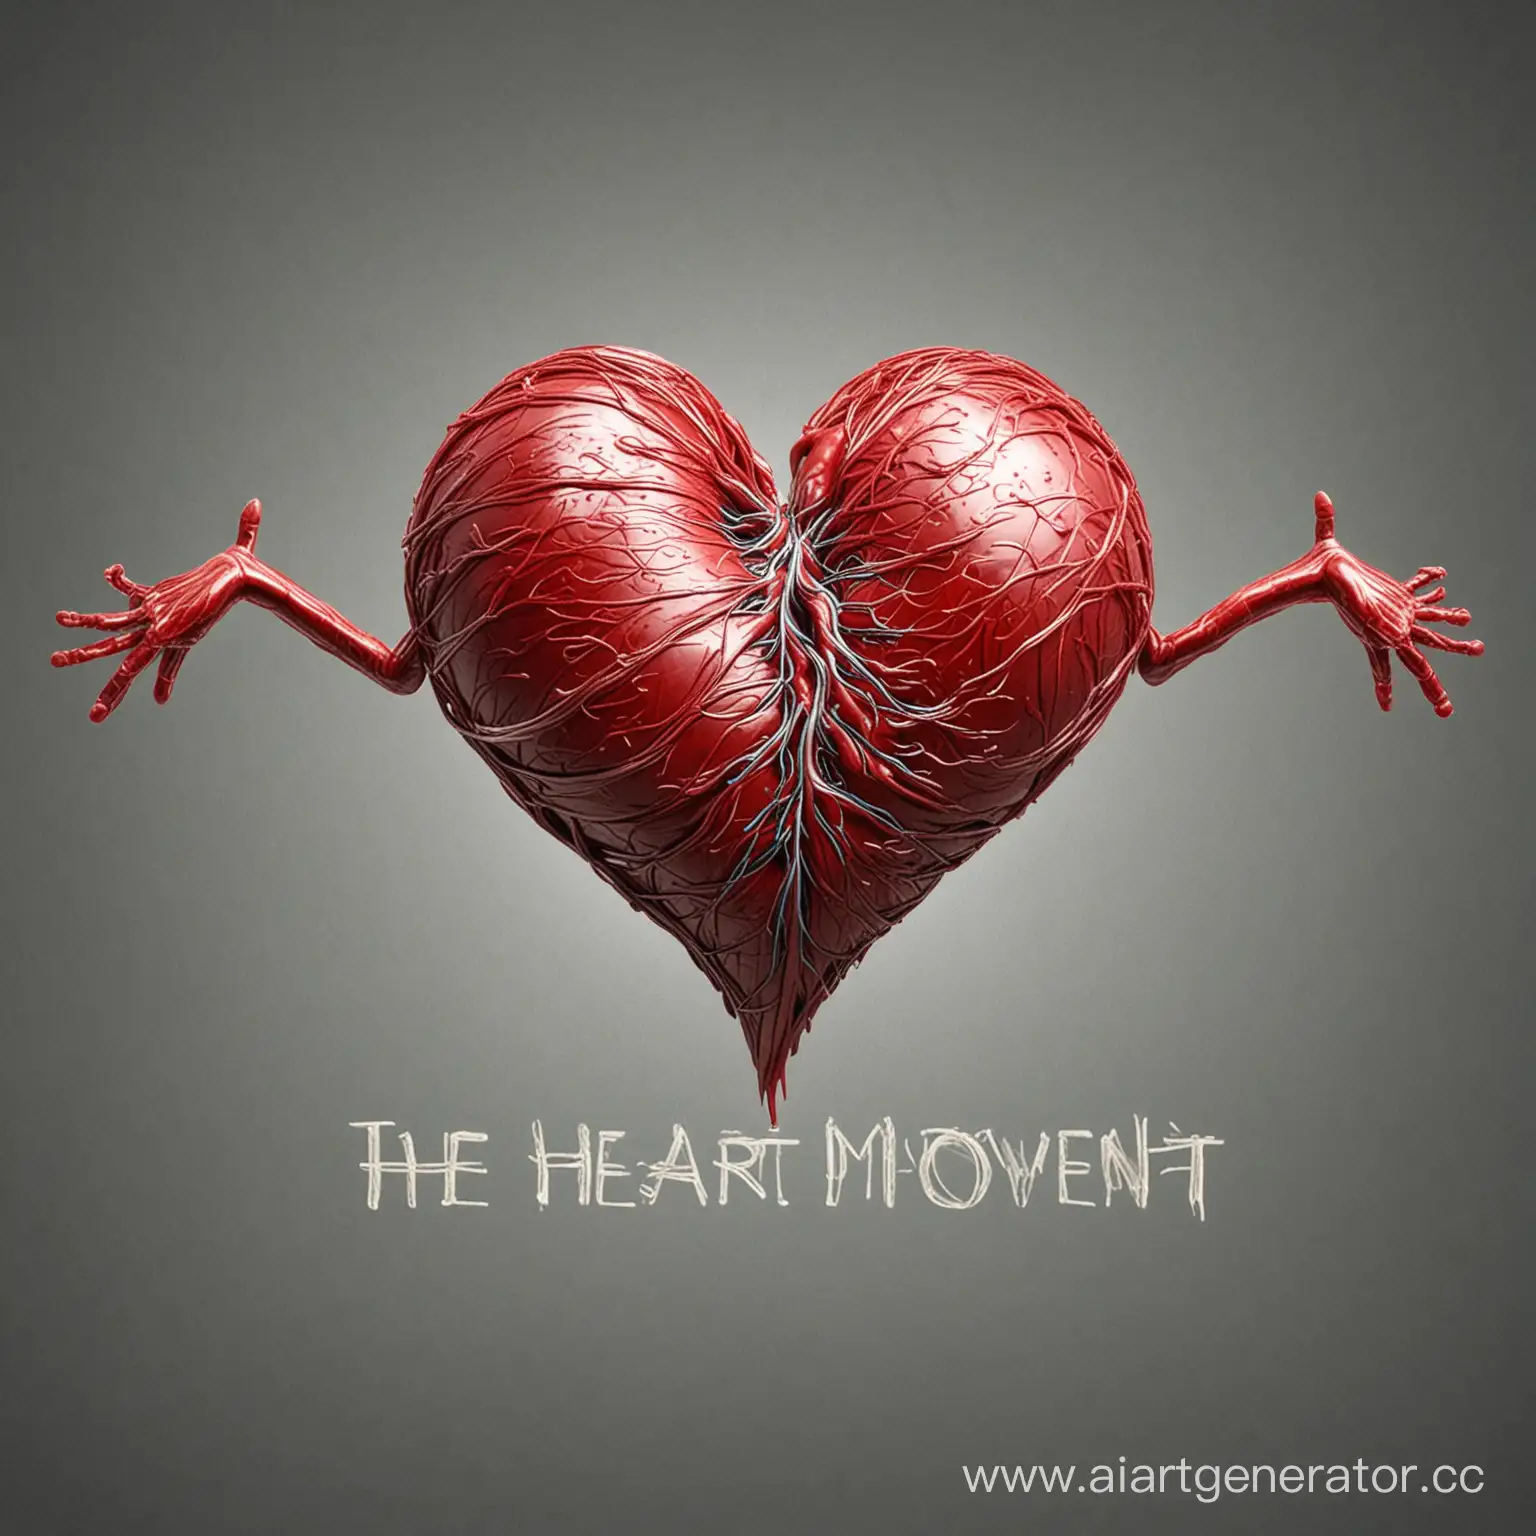 "Сердце любит движение" . Создать изображение на основе данного заголовка, чтобы там был и сам заголовок